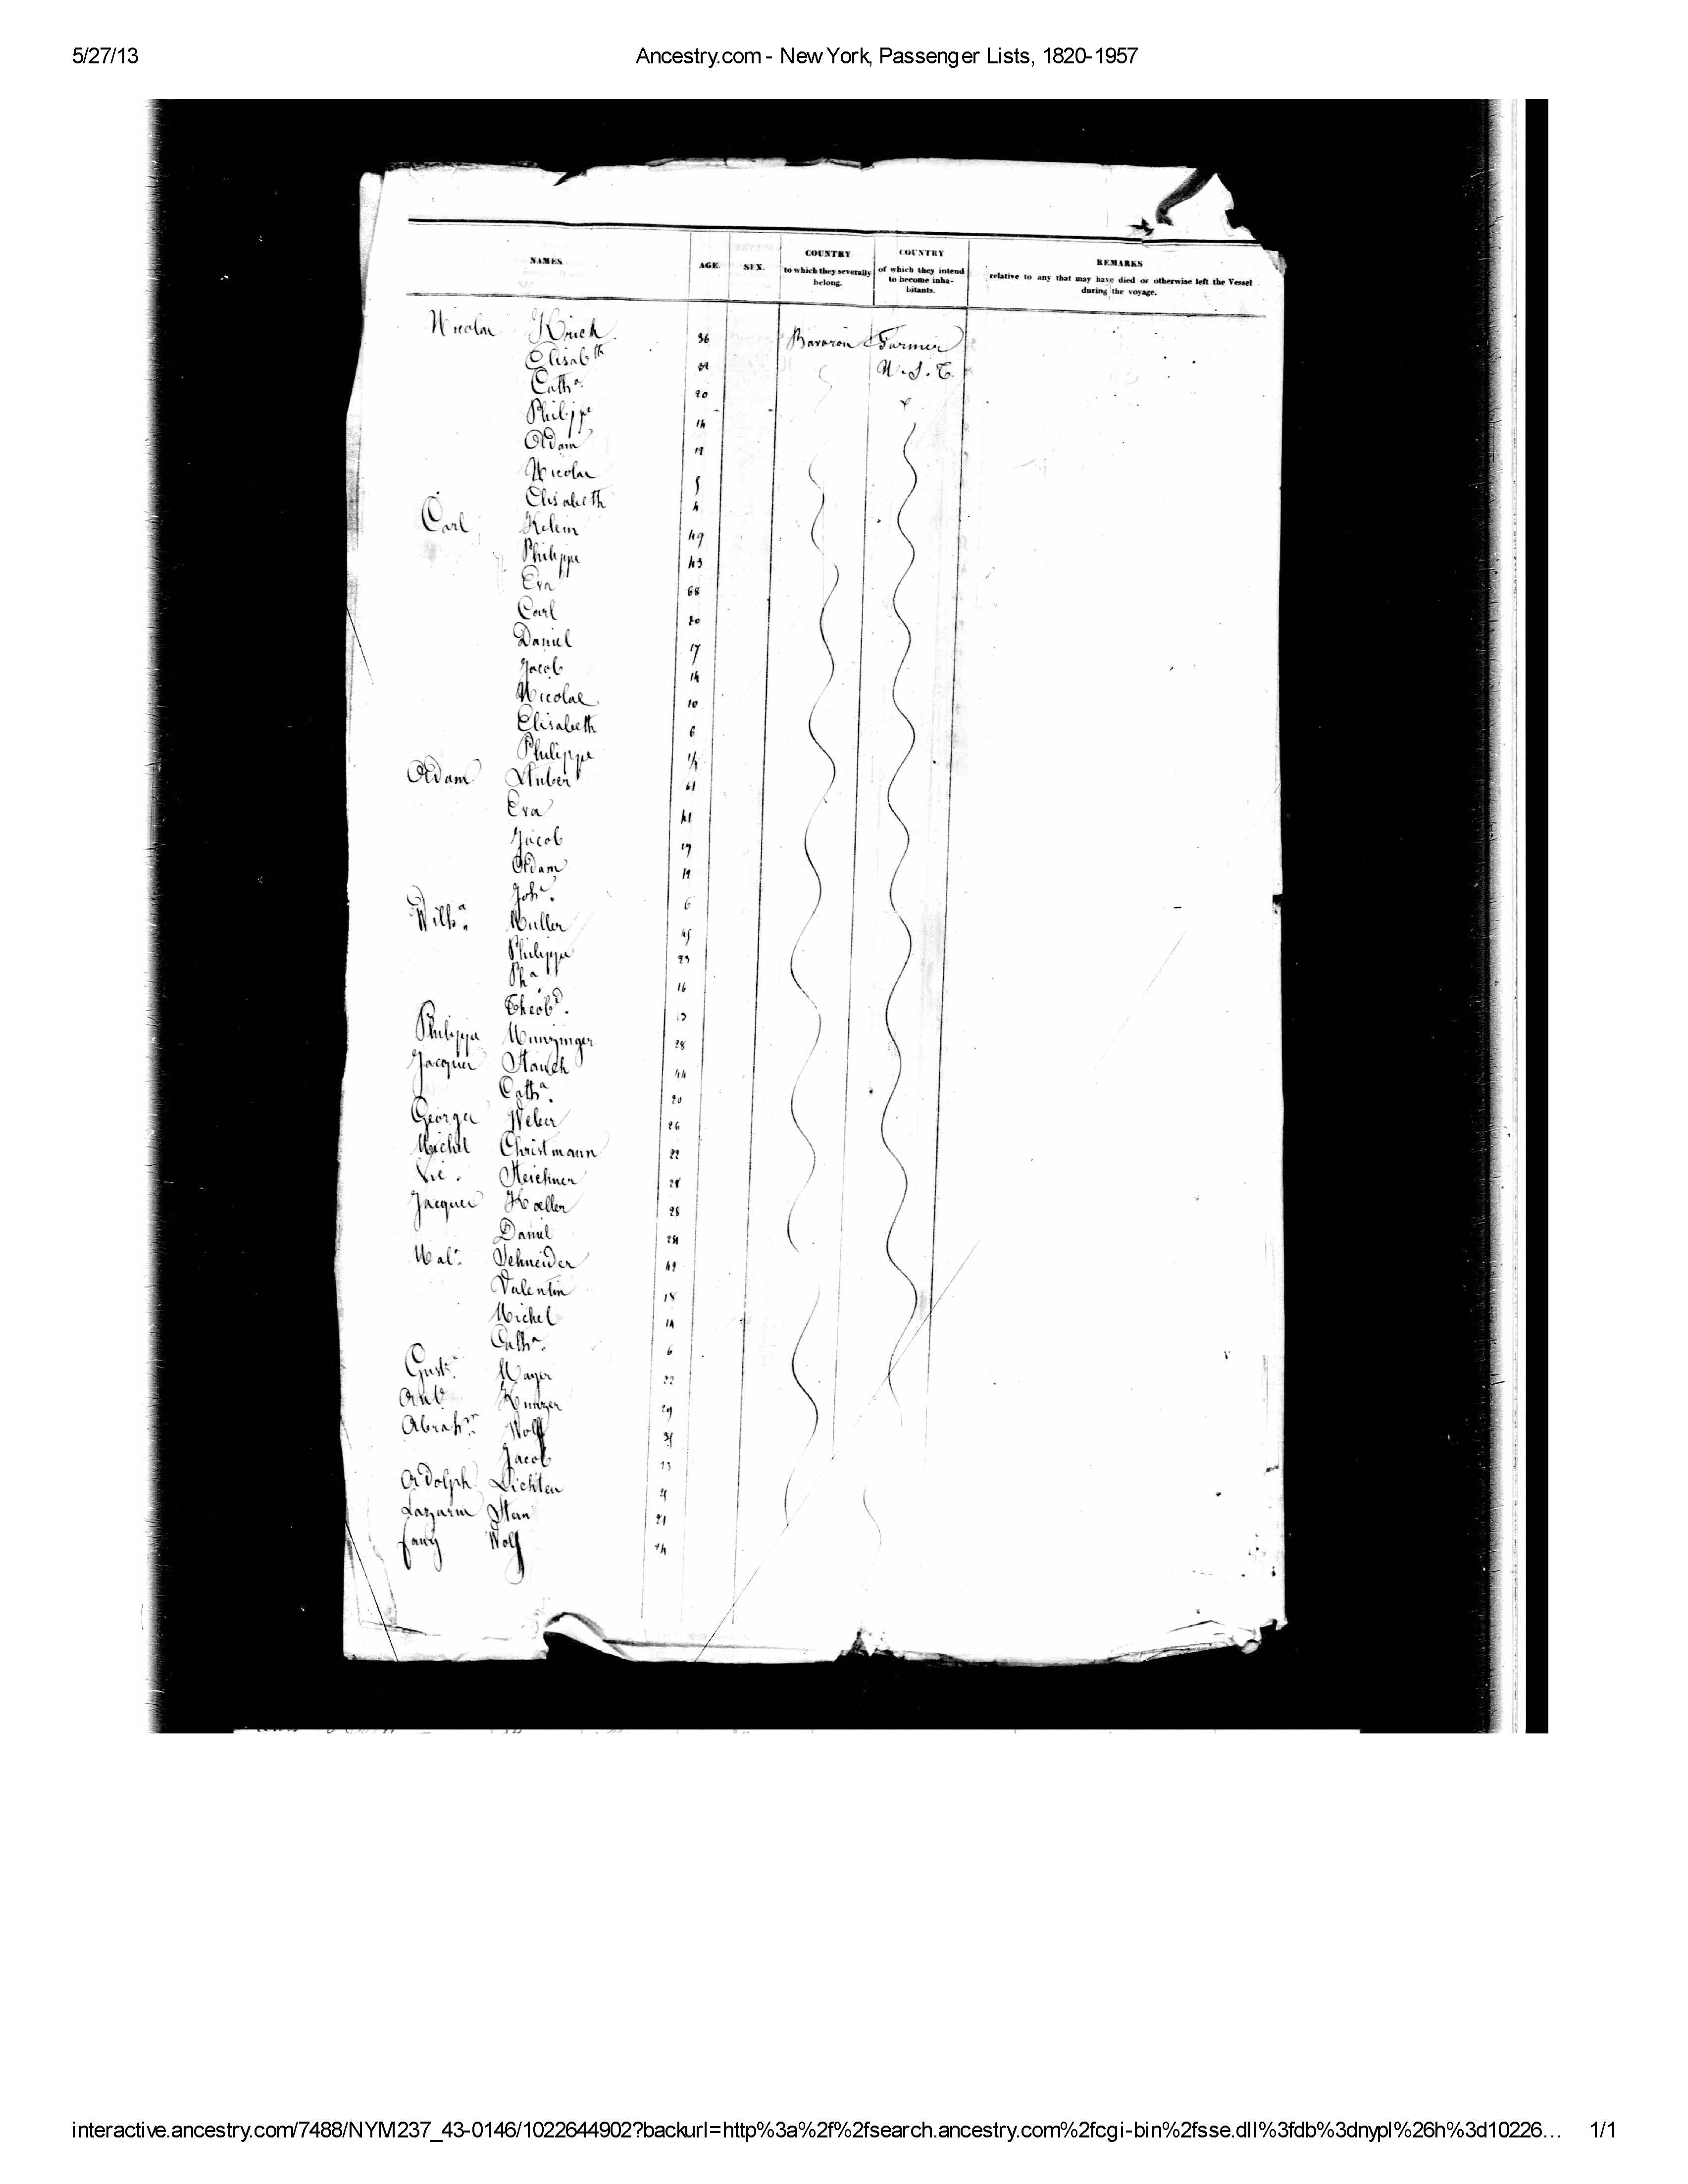 Adam Stuber family passenger list July 1840